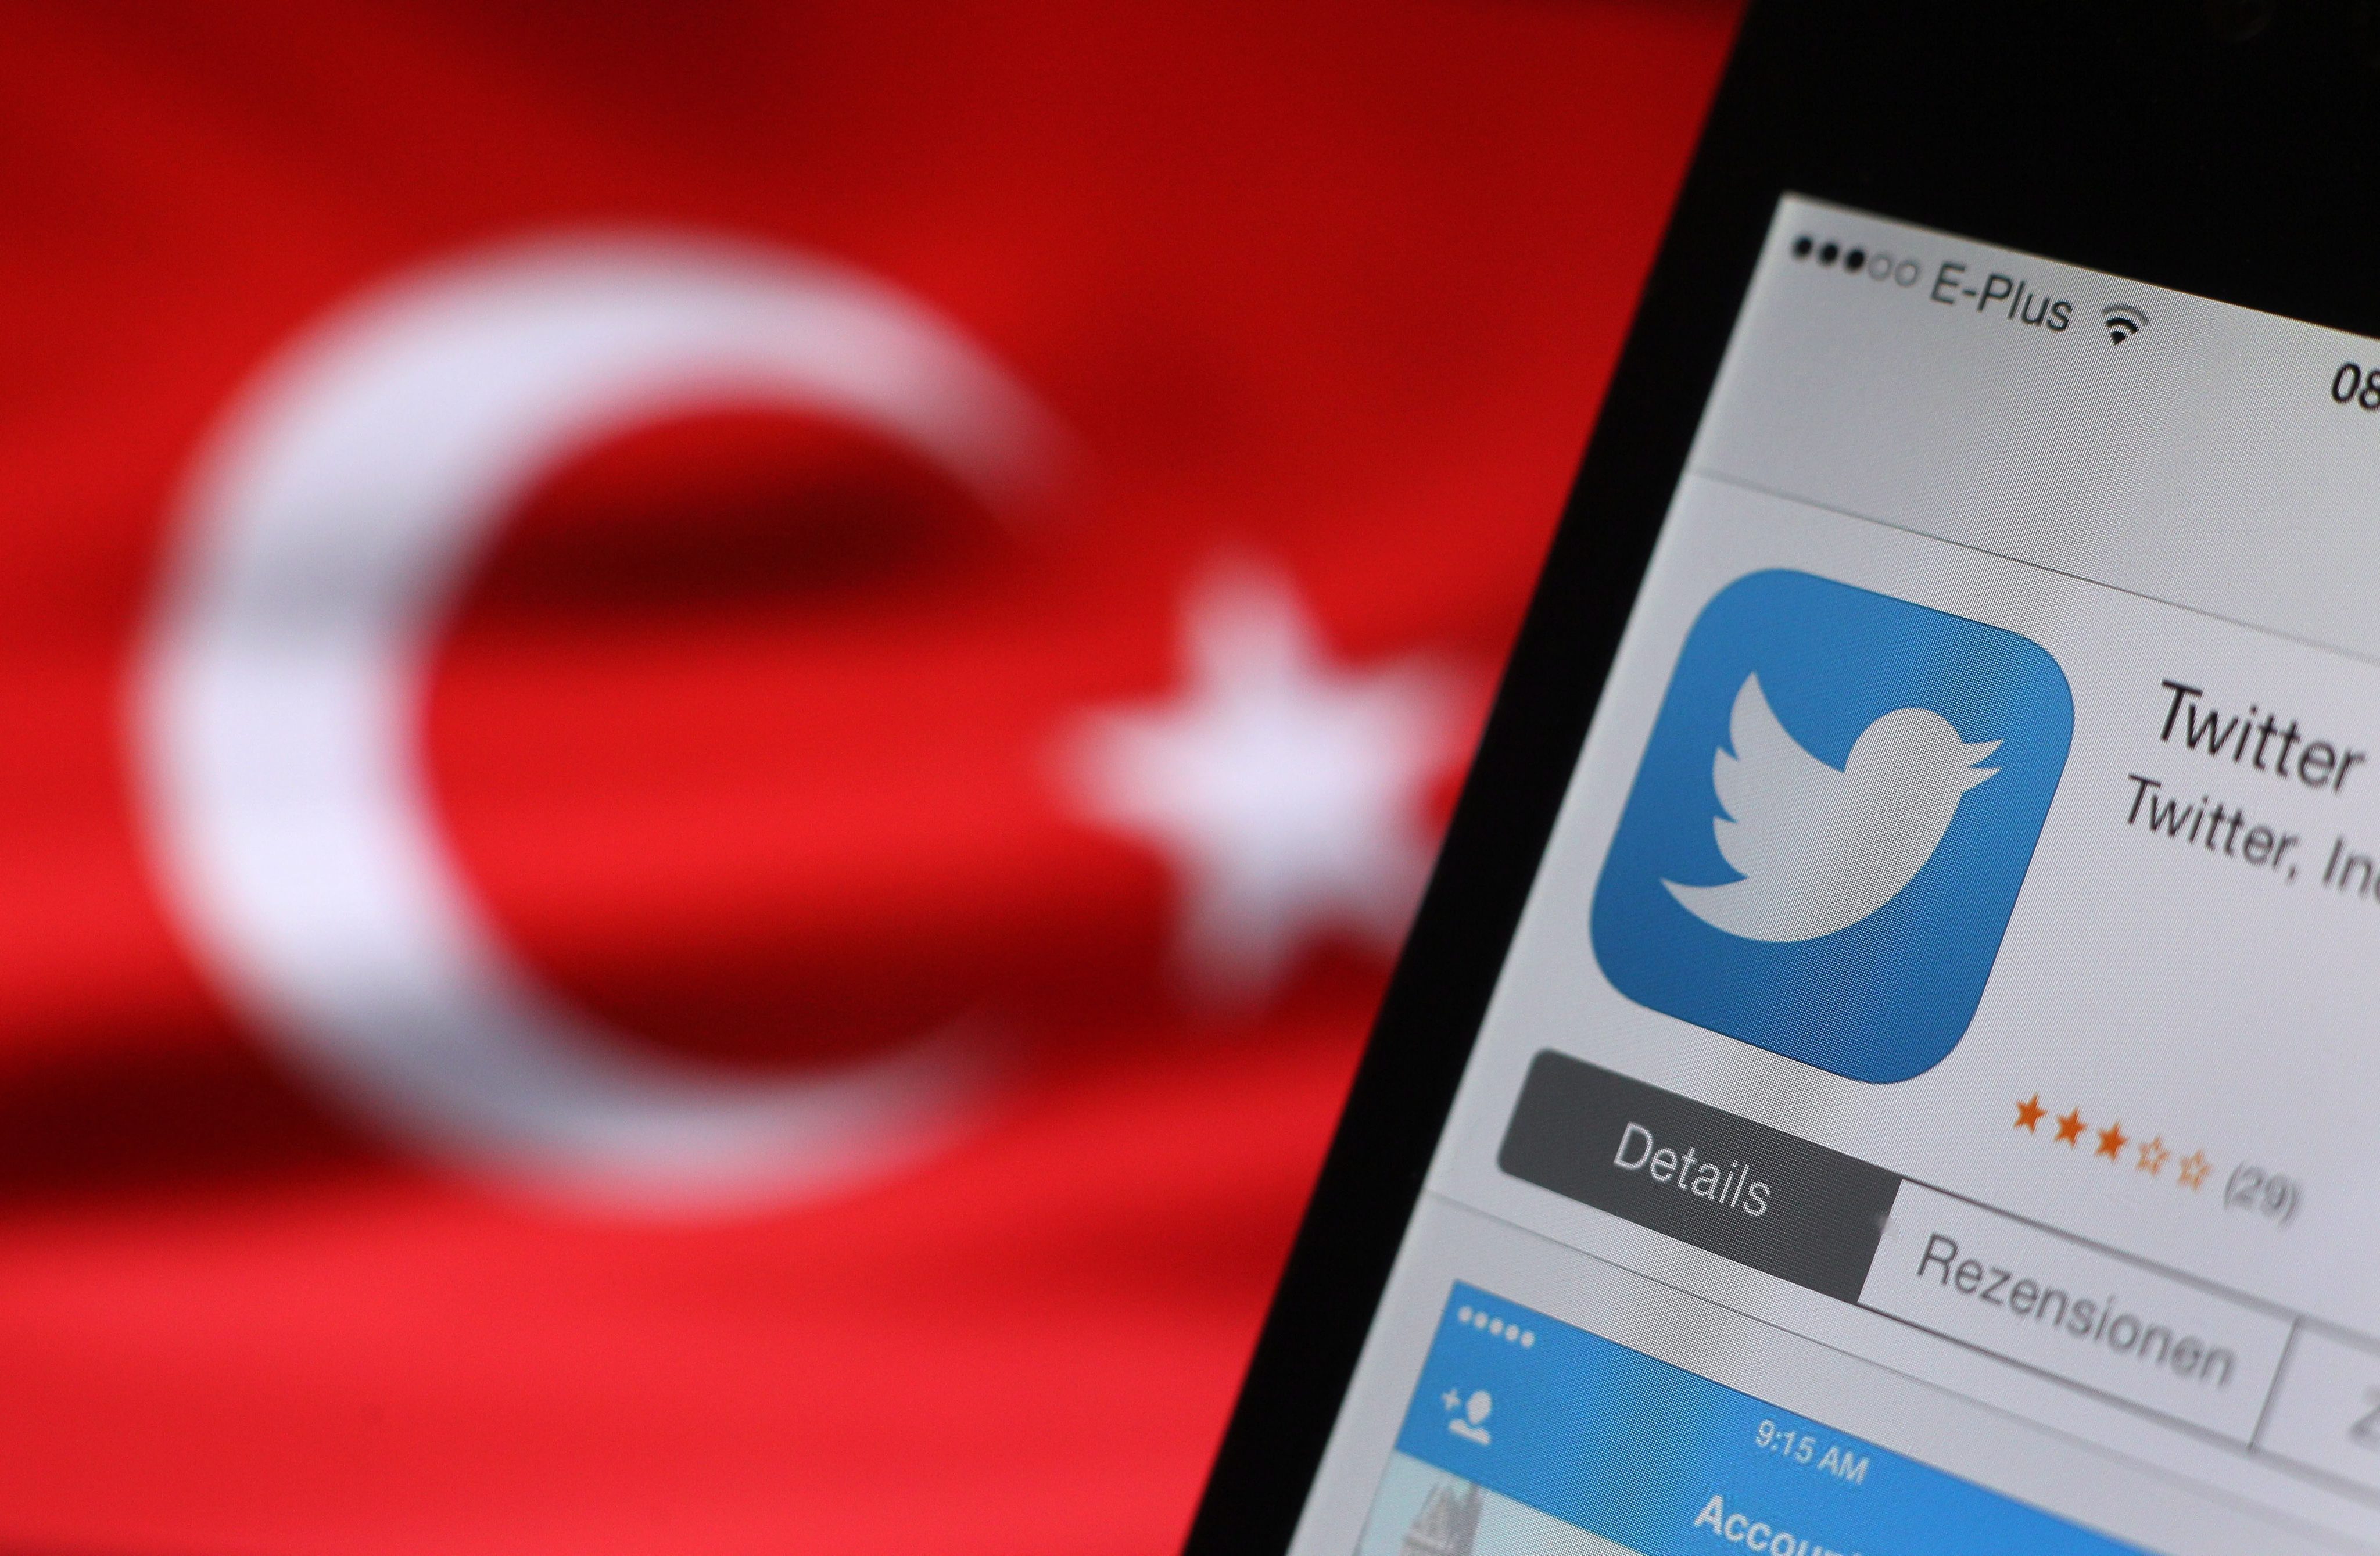 Представители на Twitter ще преговарят за отварянето на представителство на компанията в Турция